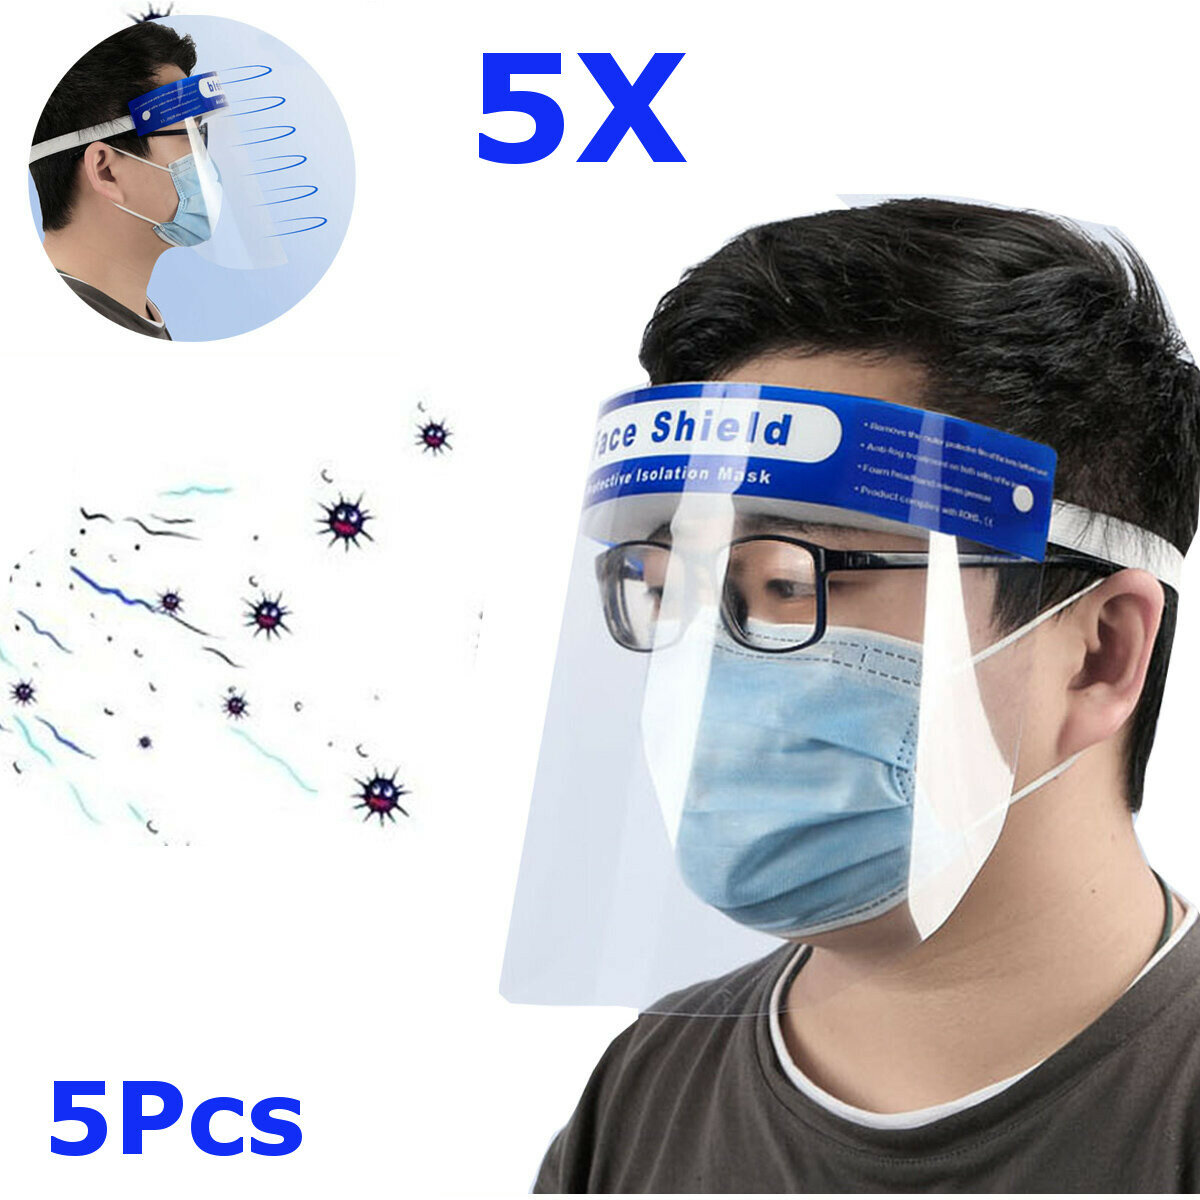 

5Pcs Transparent Adjustable Full Face Shield Plastic Anti-fog Anti-spit Protective Mask